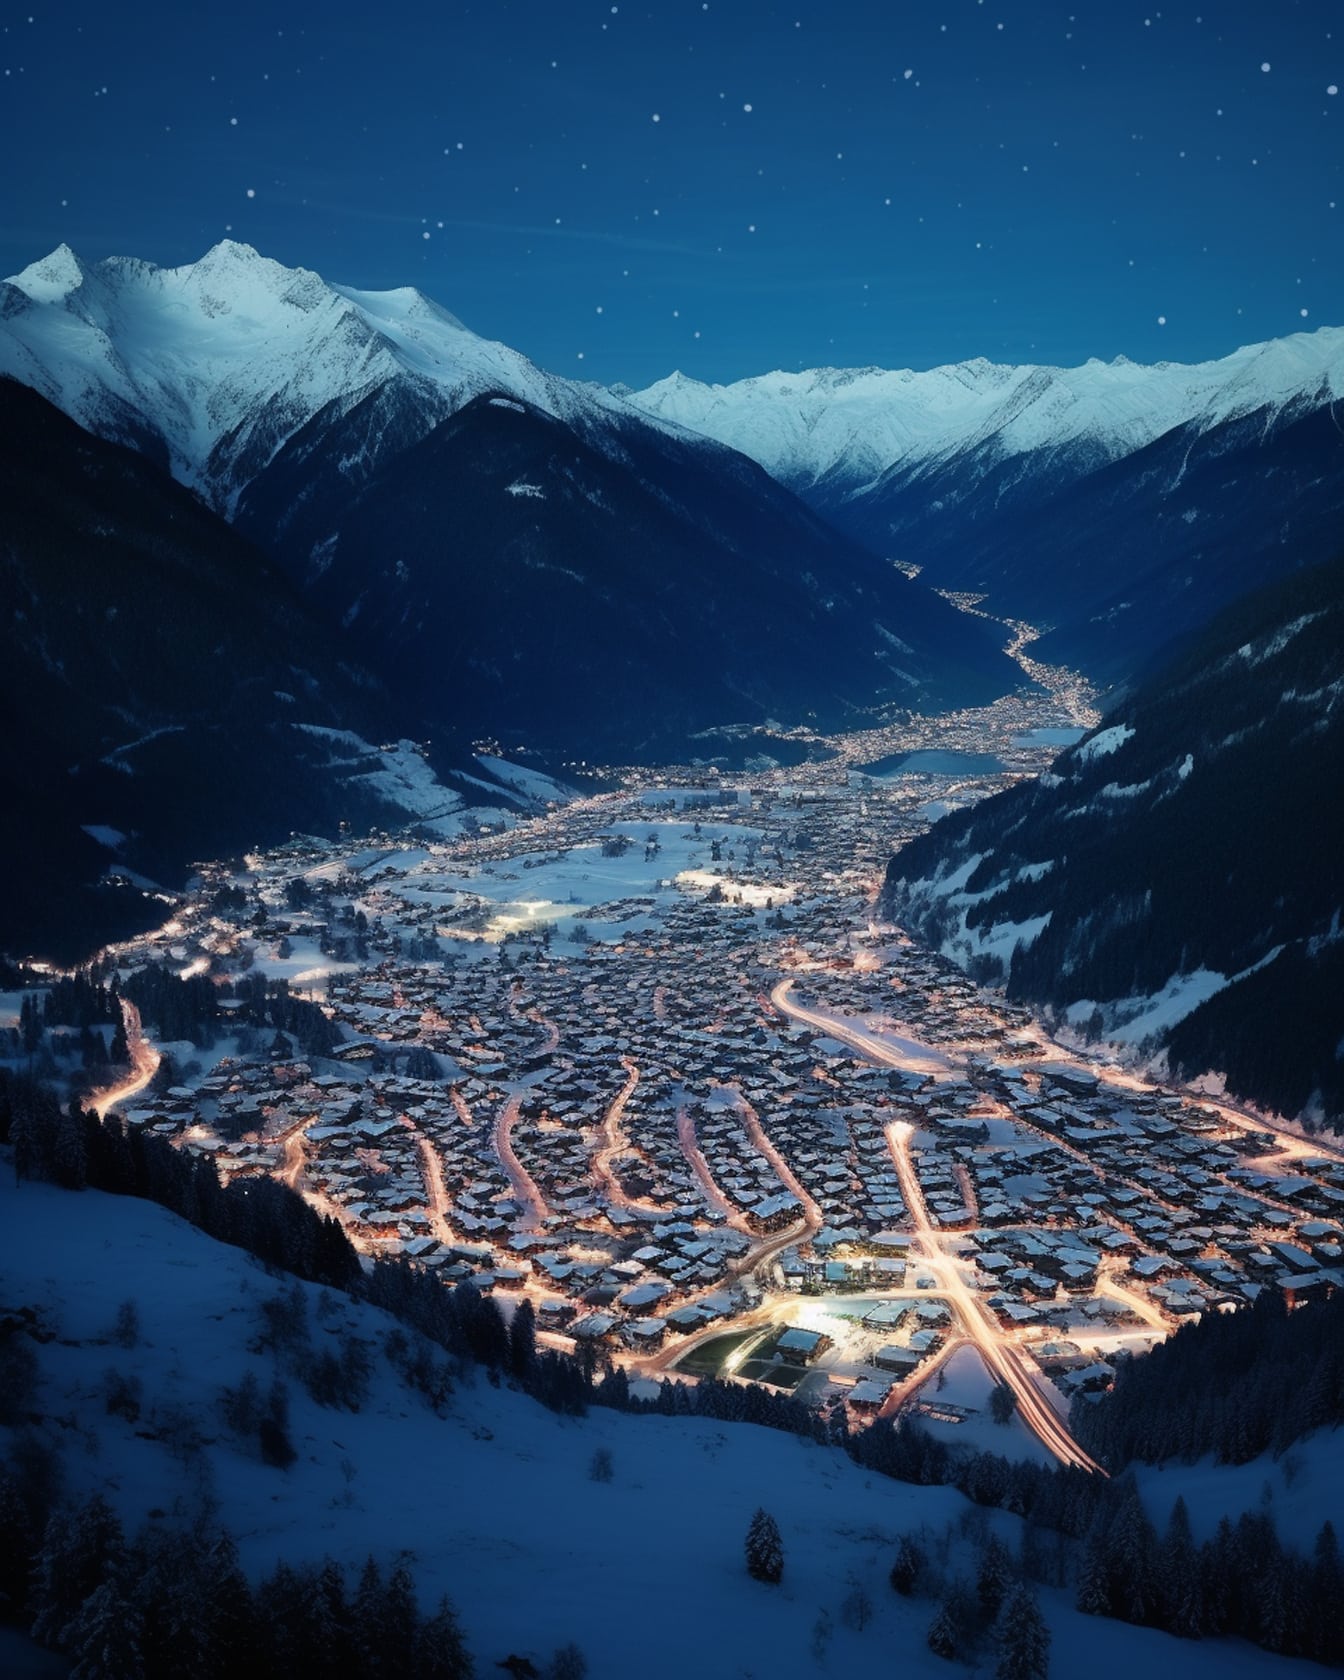 Panoramiczne nocne zdjęcie lotnicze miasta w dolinie zimowego kurortu